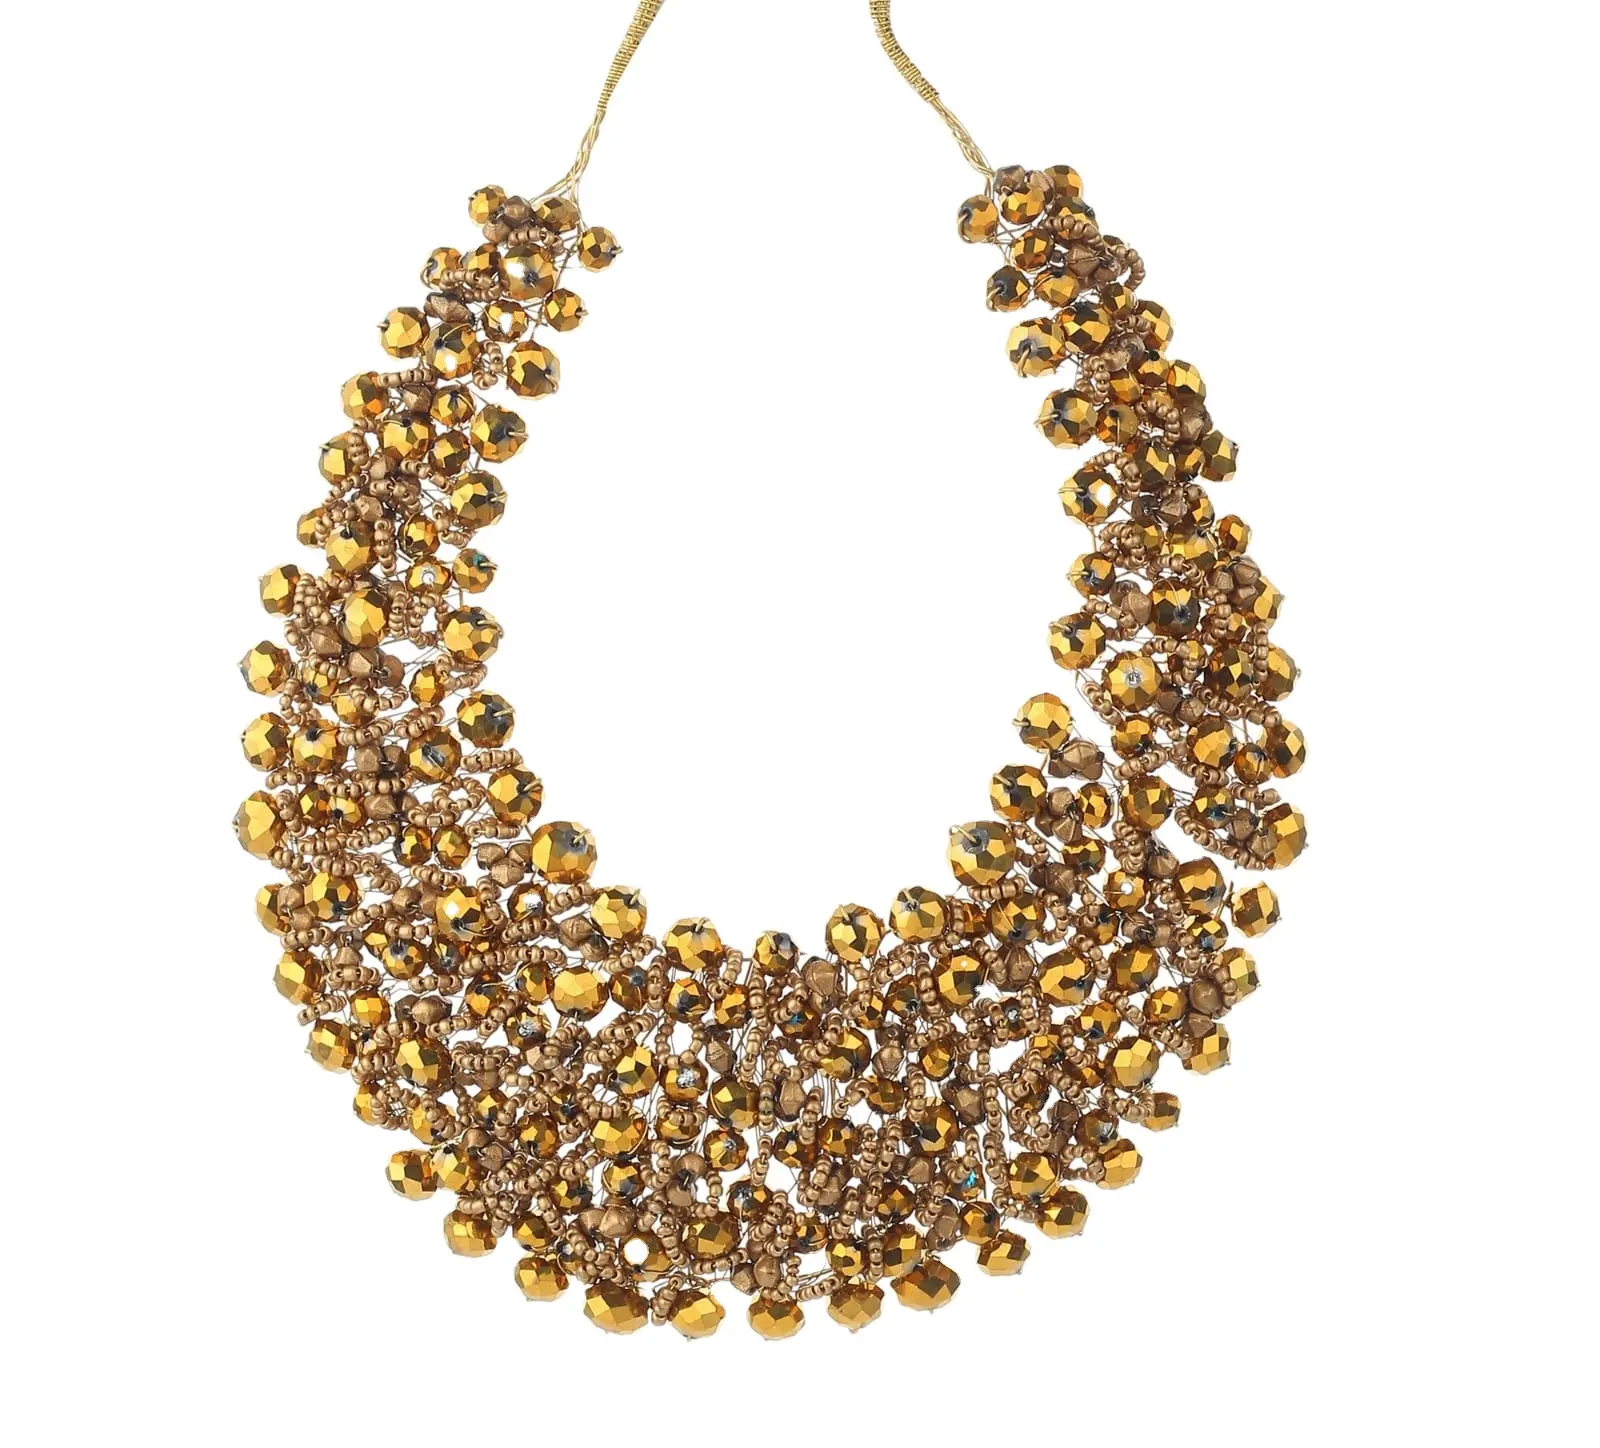 Kadınlar ve kızlar için son etnik el yapımı altın boncuklu kolye tohum boncuk gerdanlık moda takı toptan fiyata yeni